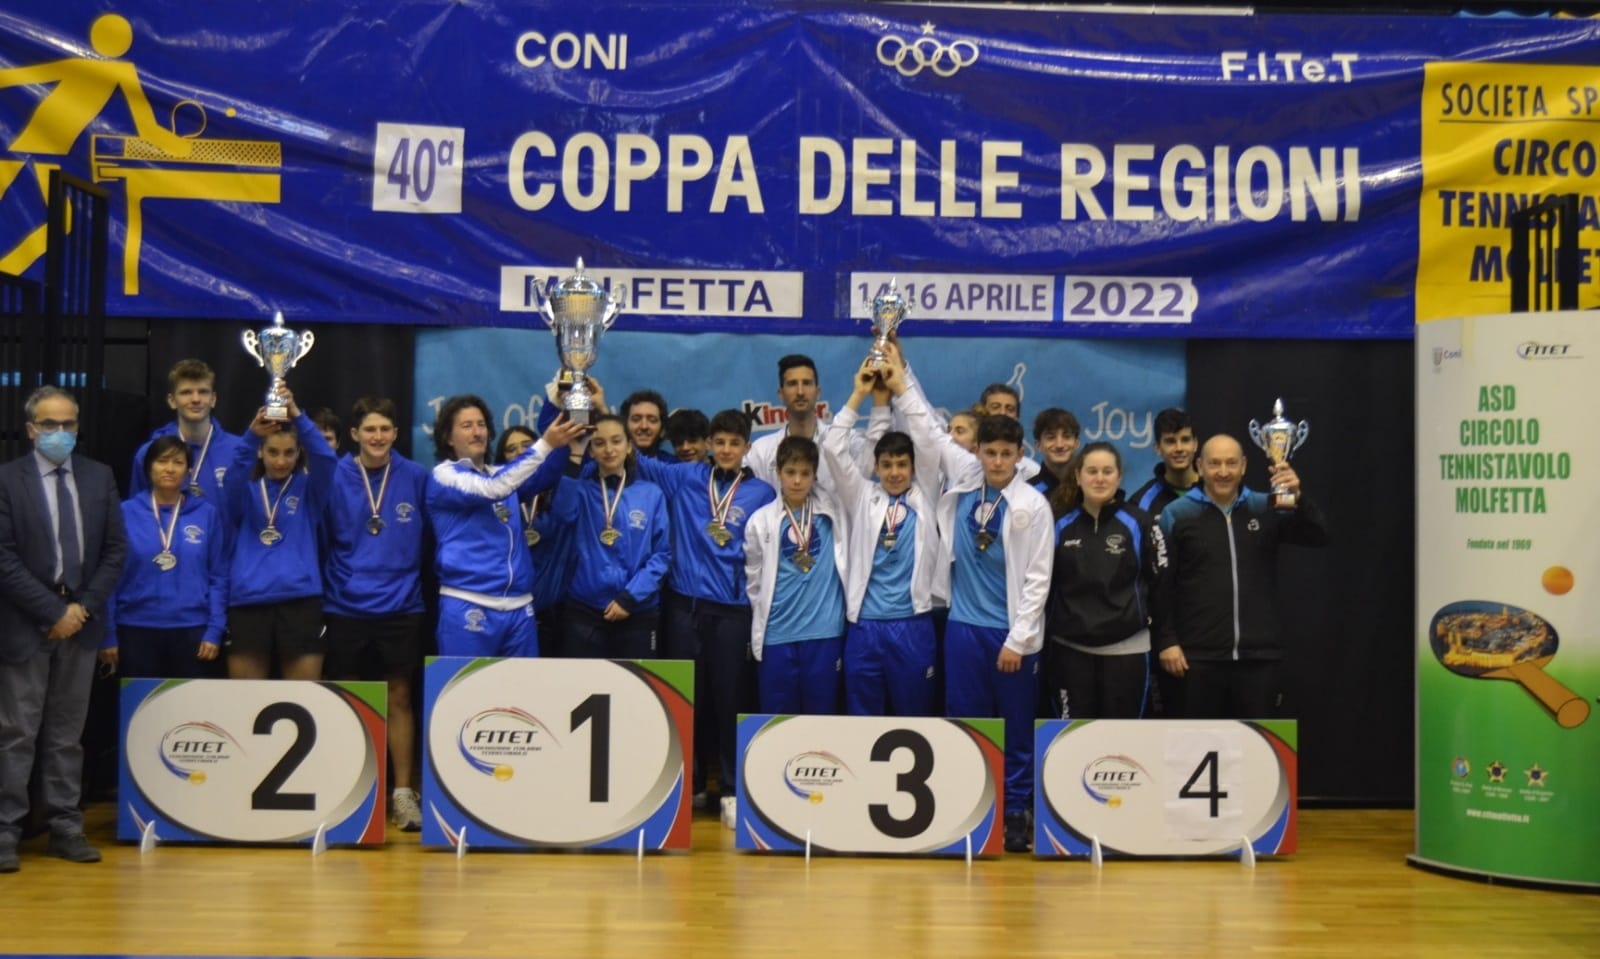 Coppa delle Regioni 2022 podio a squadre